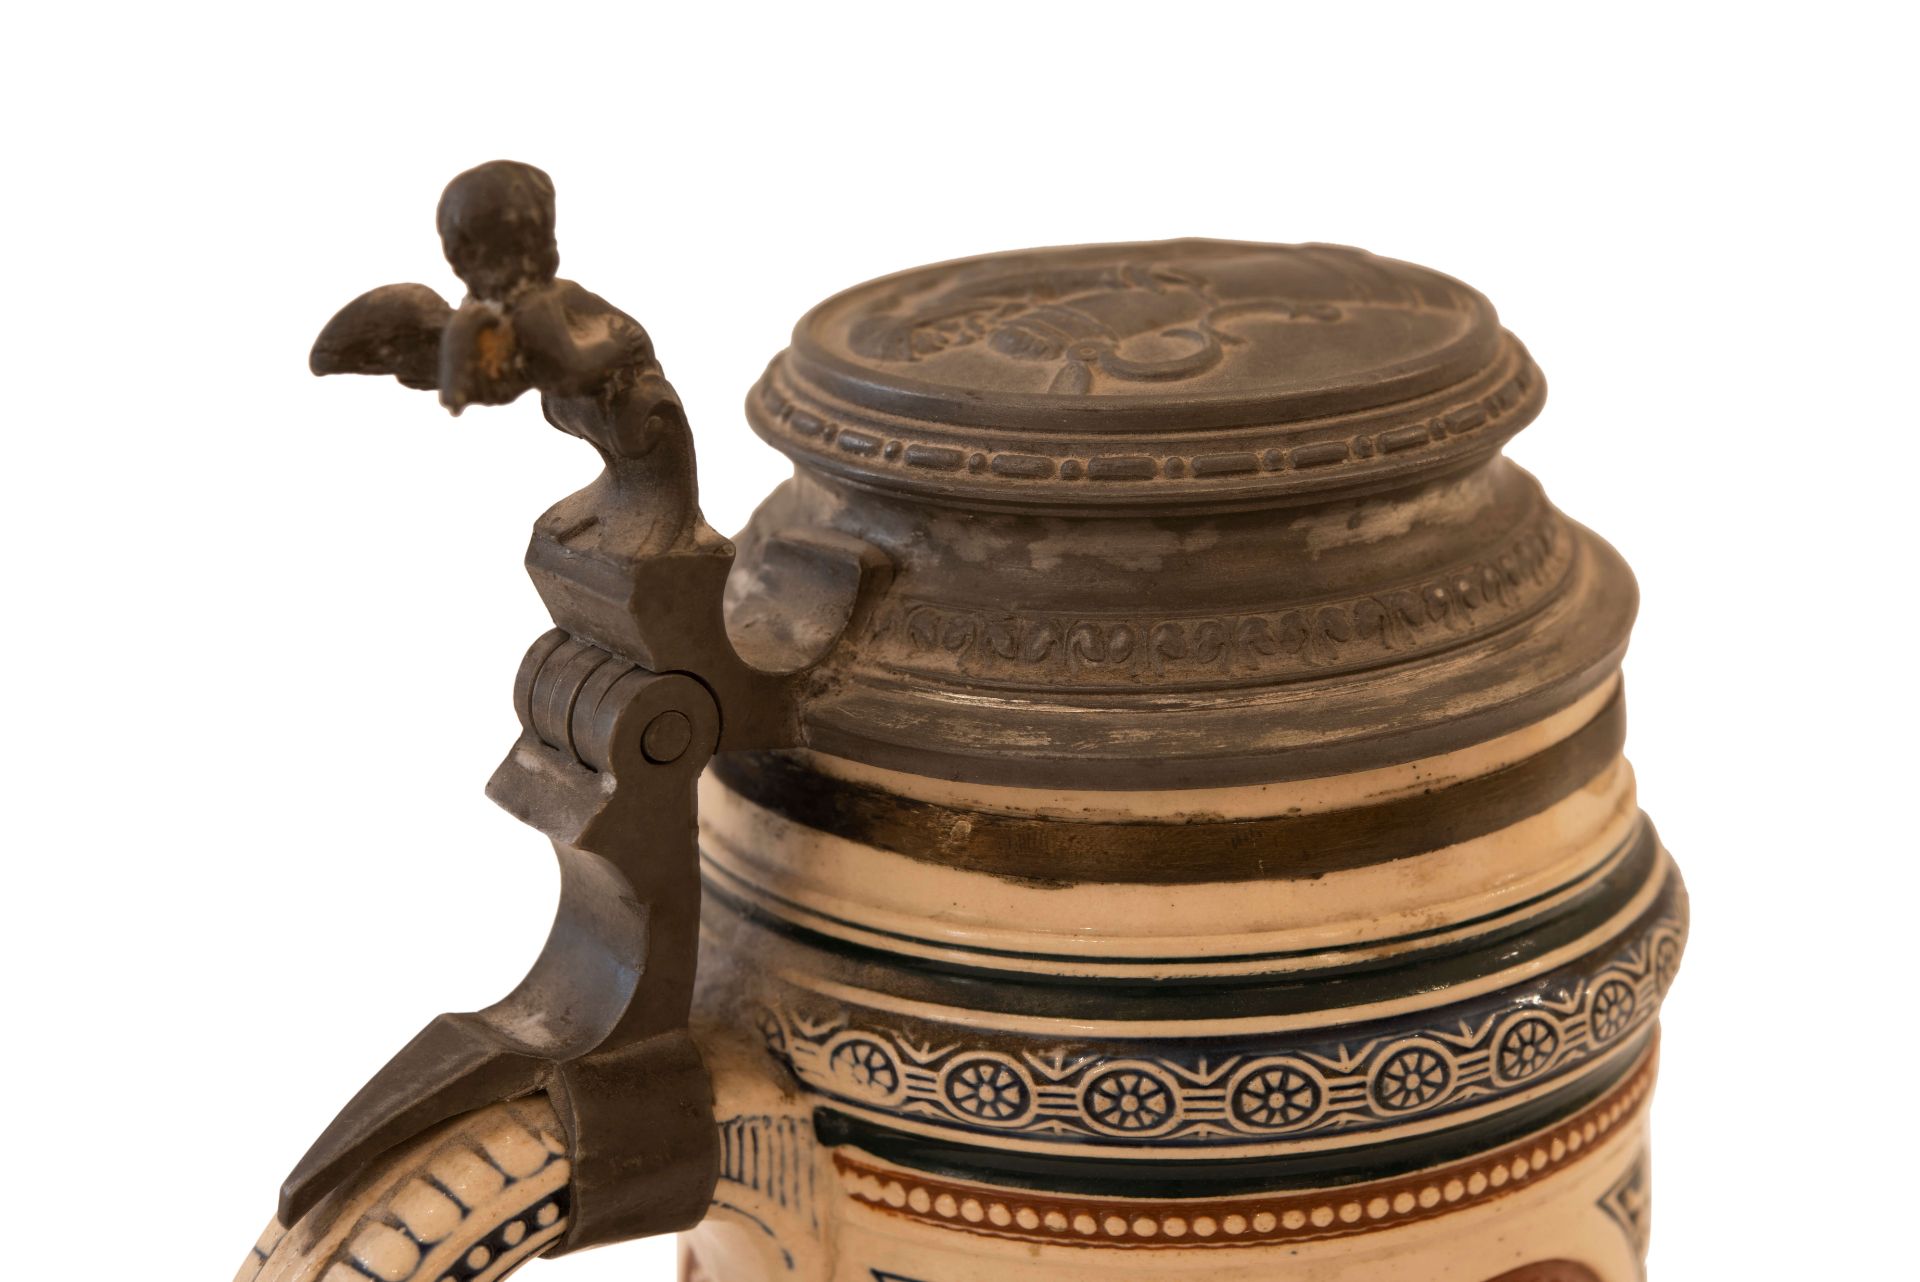 Keramik Bierkrug mit Deckel | Ceramic Beer Mug with Lid - Image 3 of 5